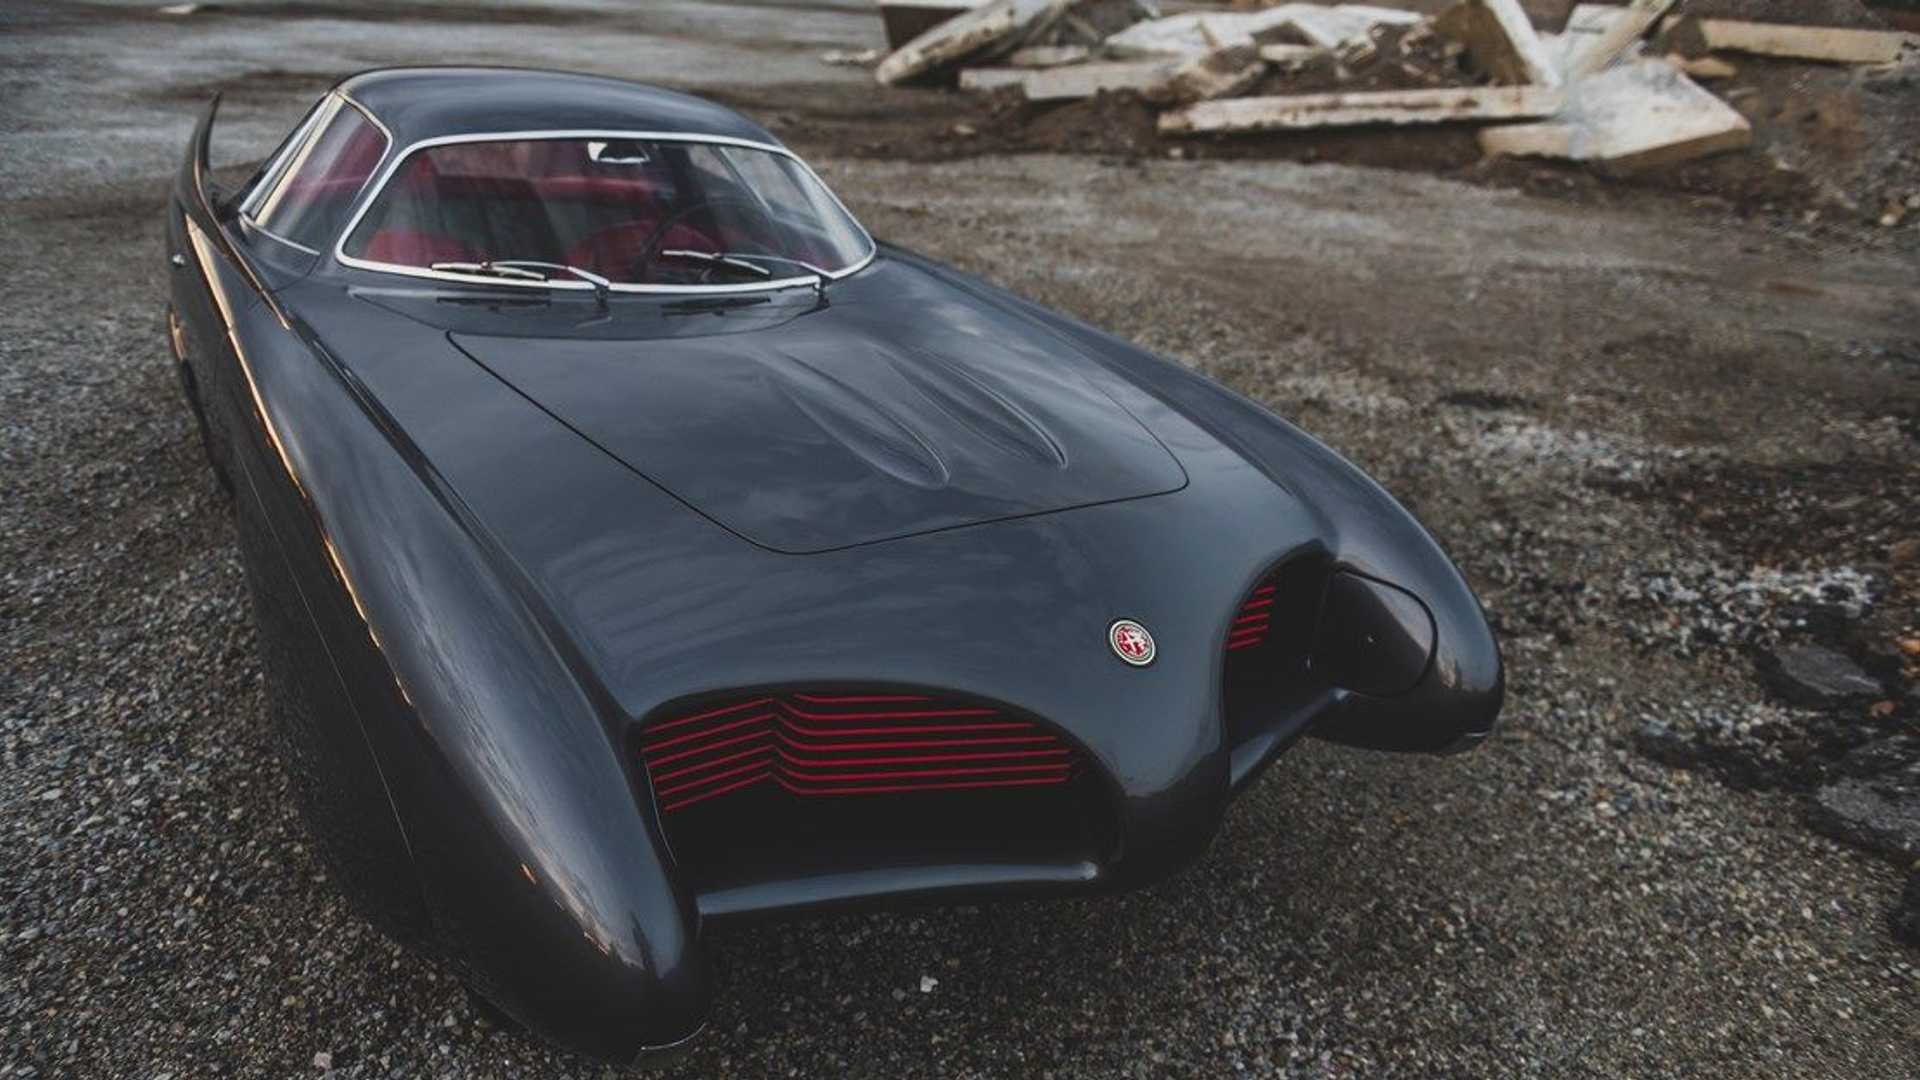 خودروی مفهومی آلفا رومئو / Alfa Romeo B.A.T. Concept Car با رنگ خاکستری